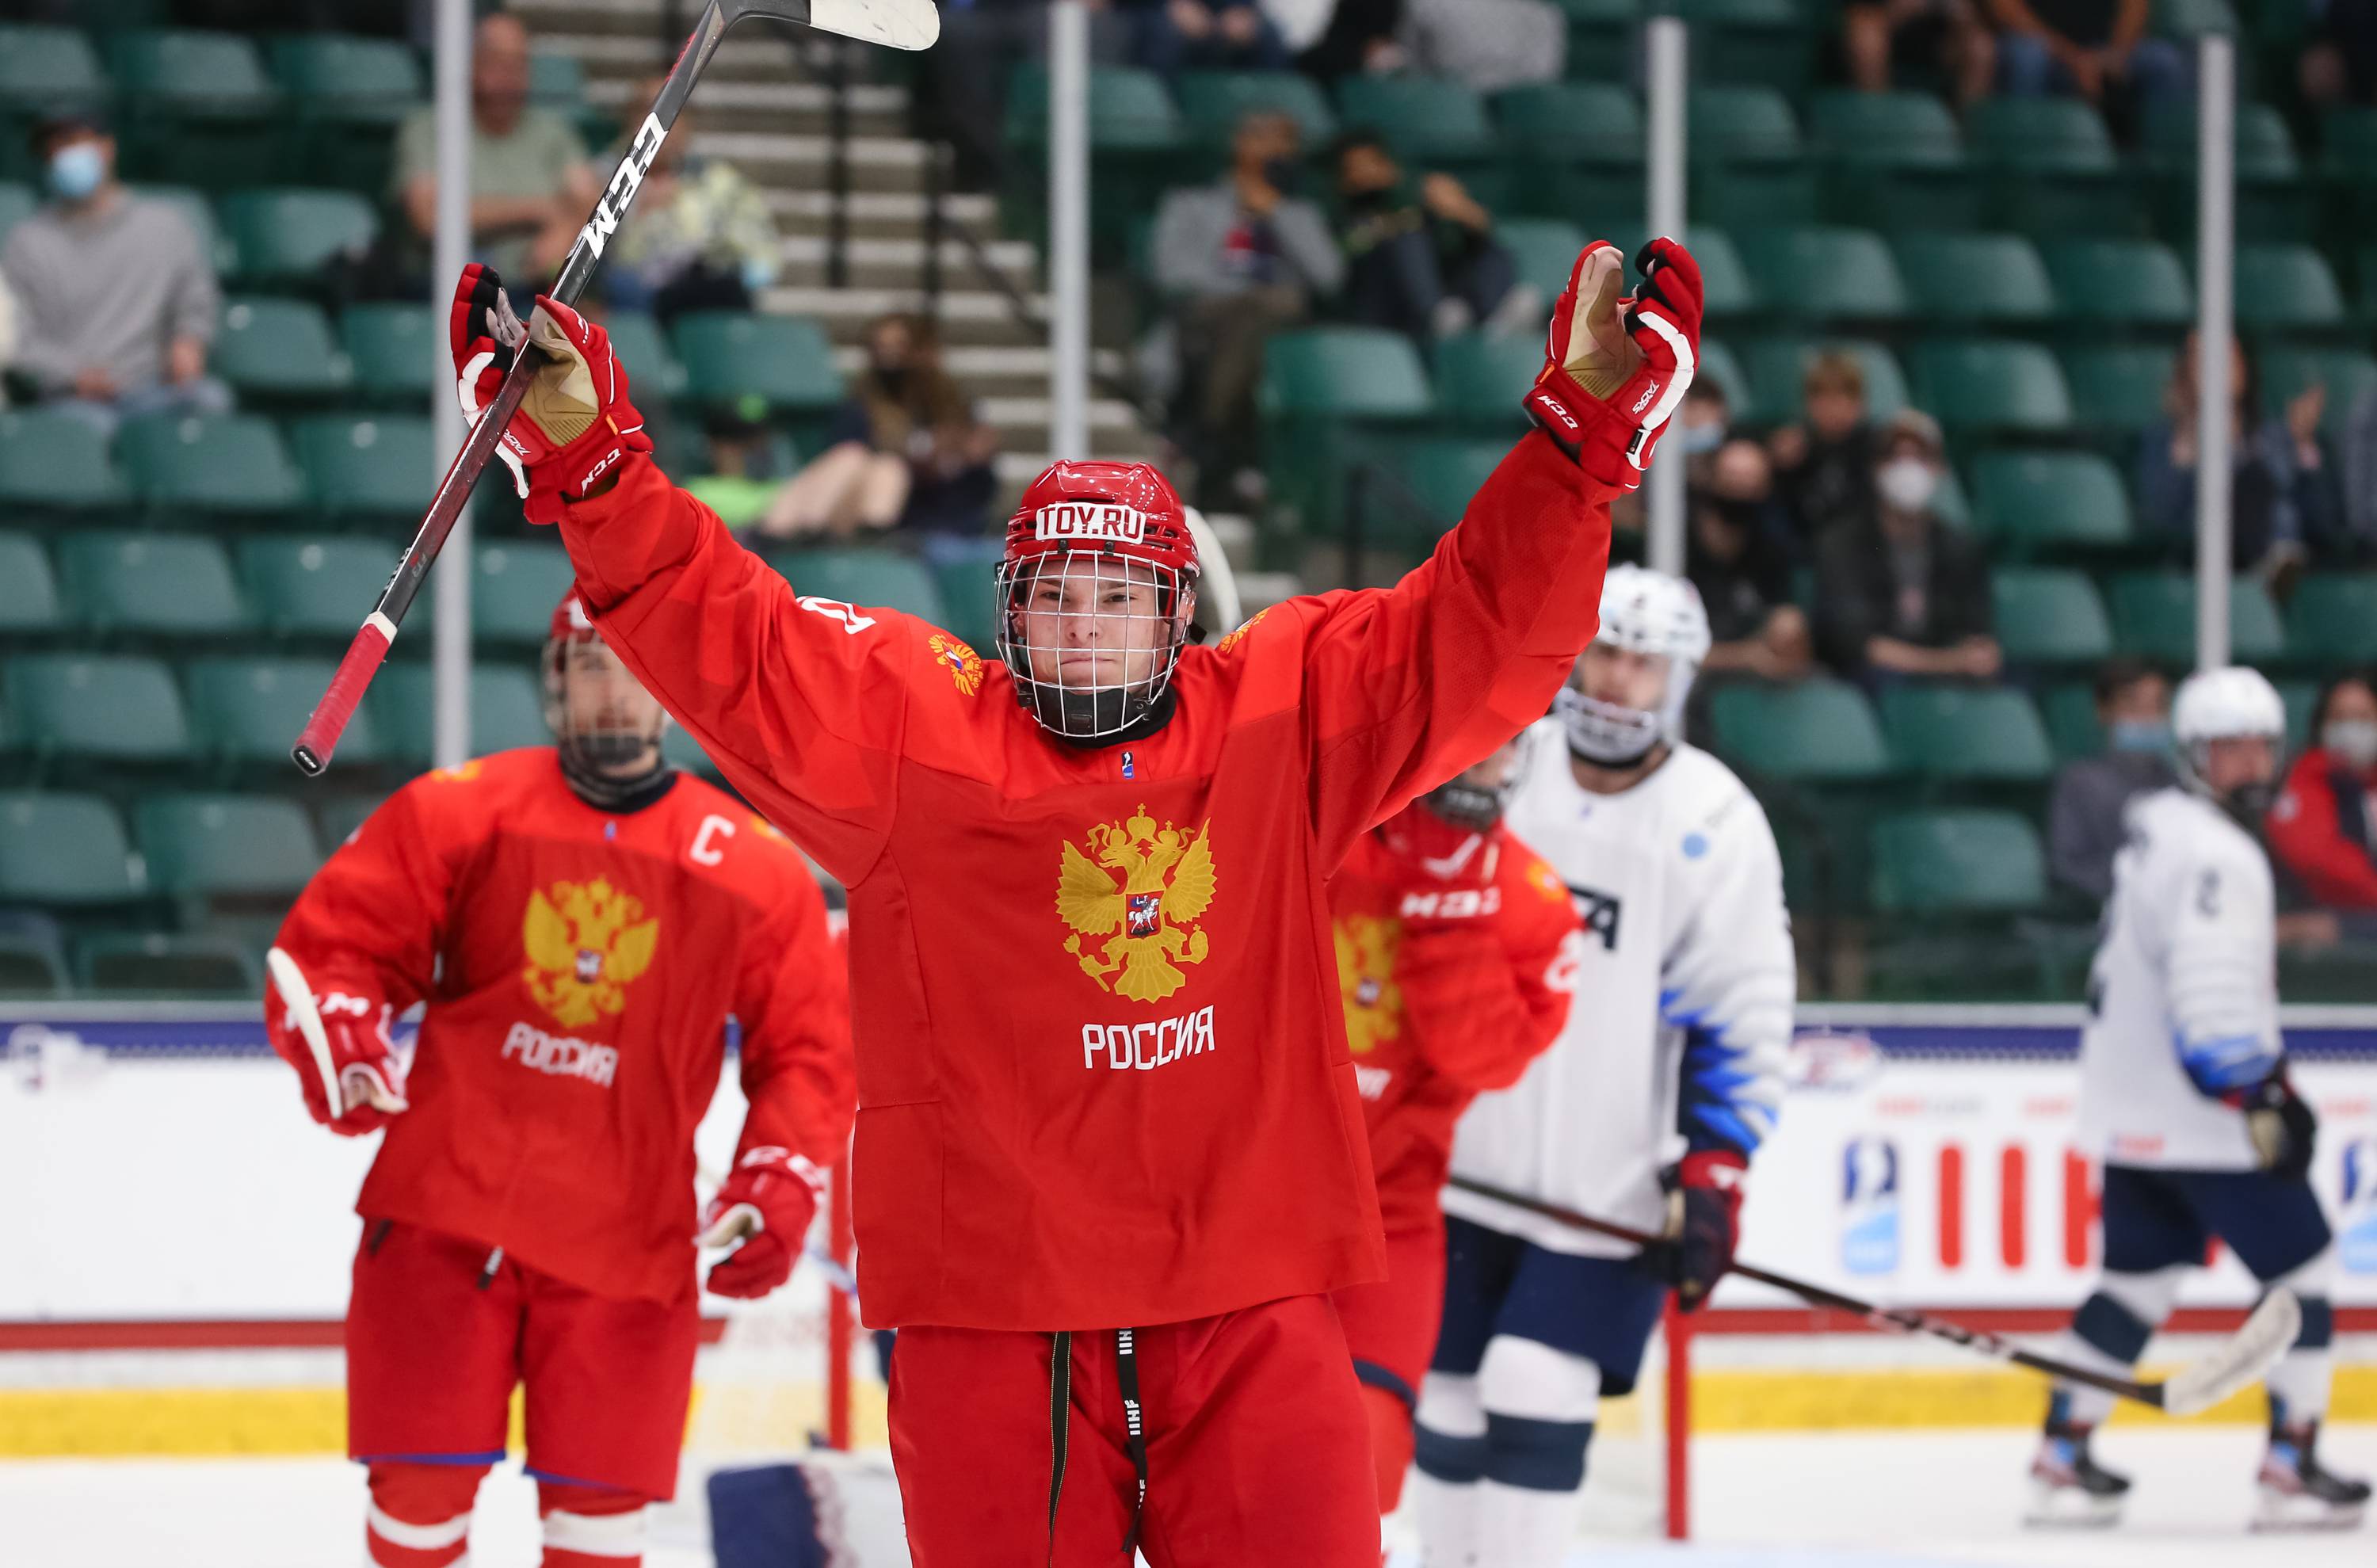 Прозвища топовых российских хоккеистов в нхл. разбираем истории их возникновения